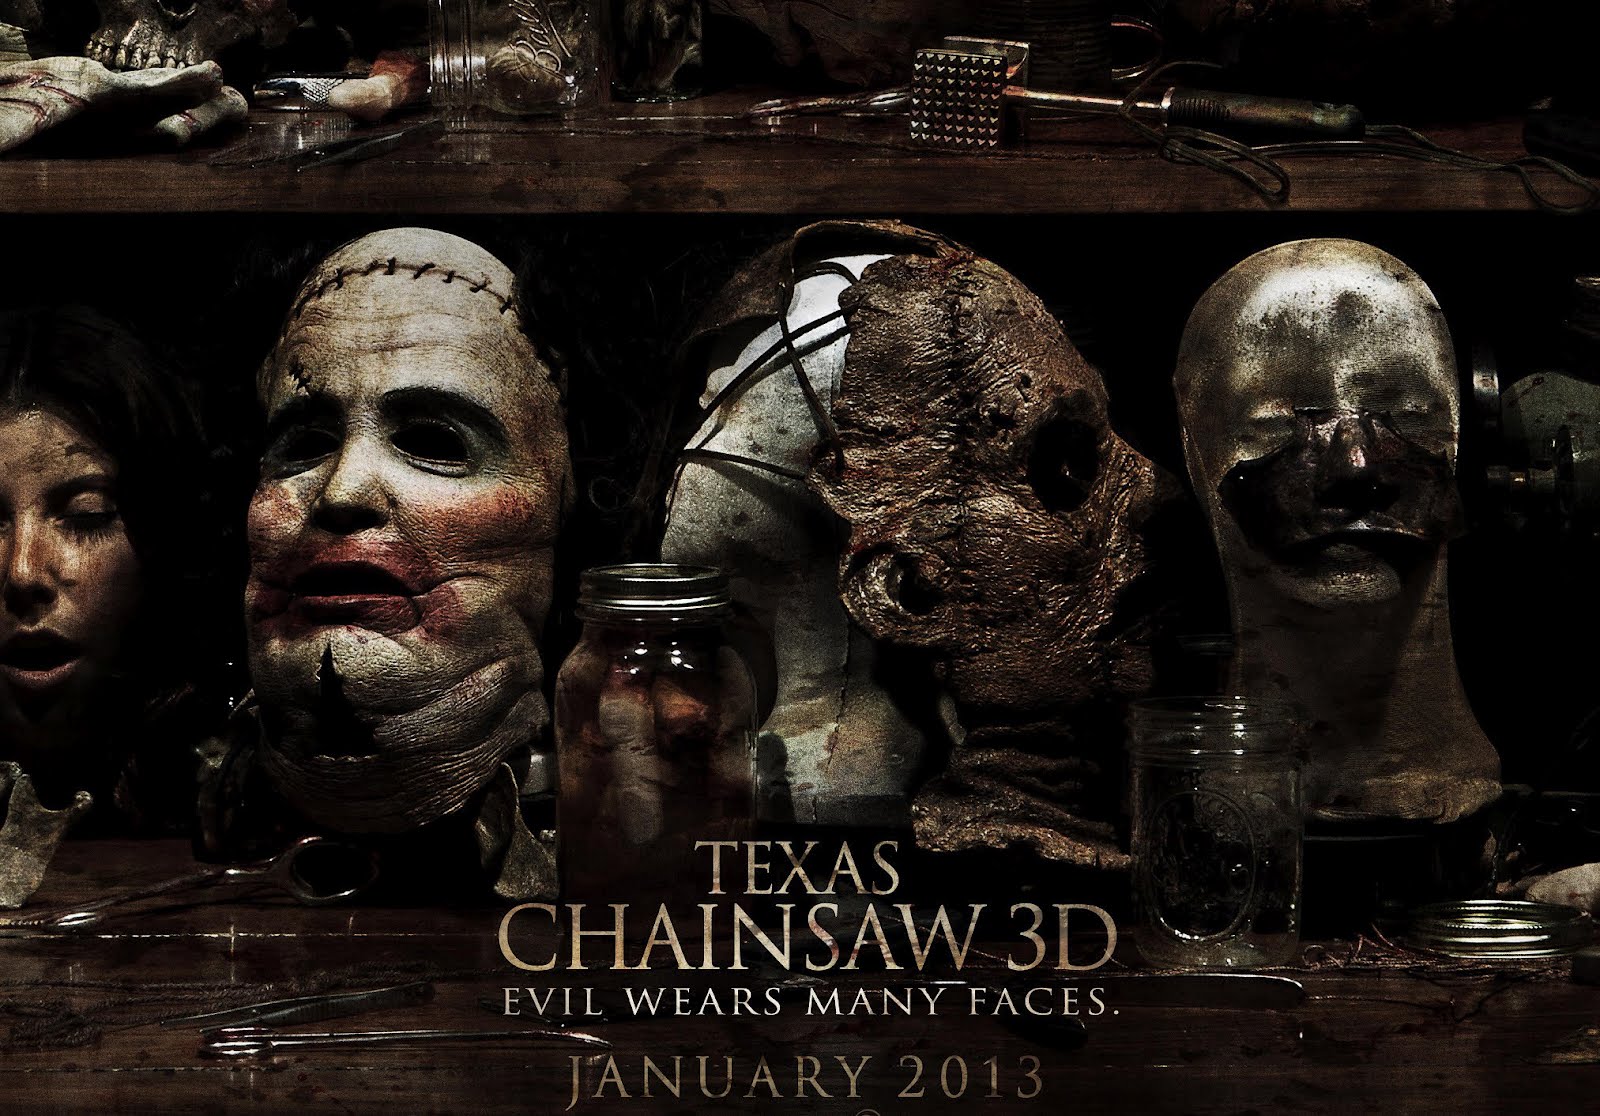 Texas Chainsaw 3D 2013